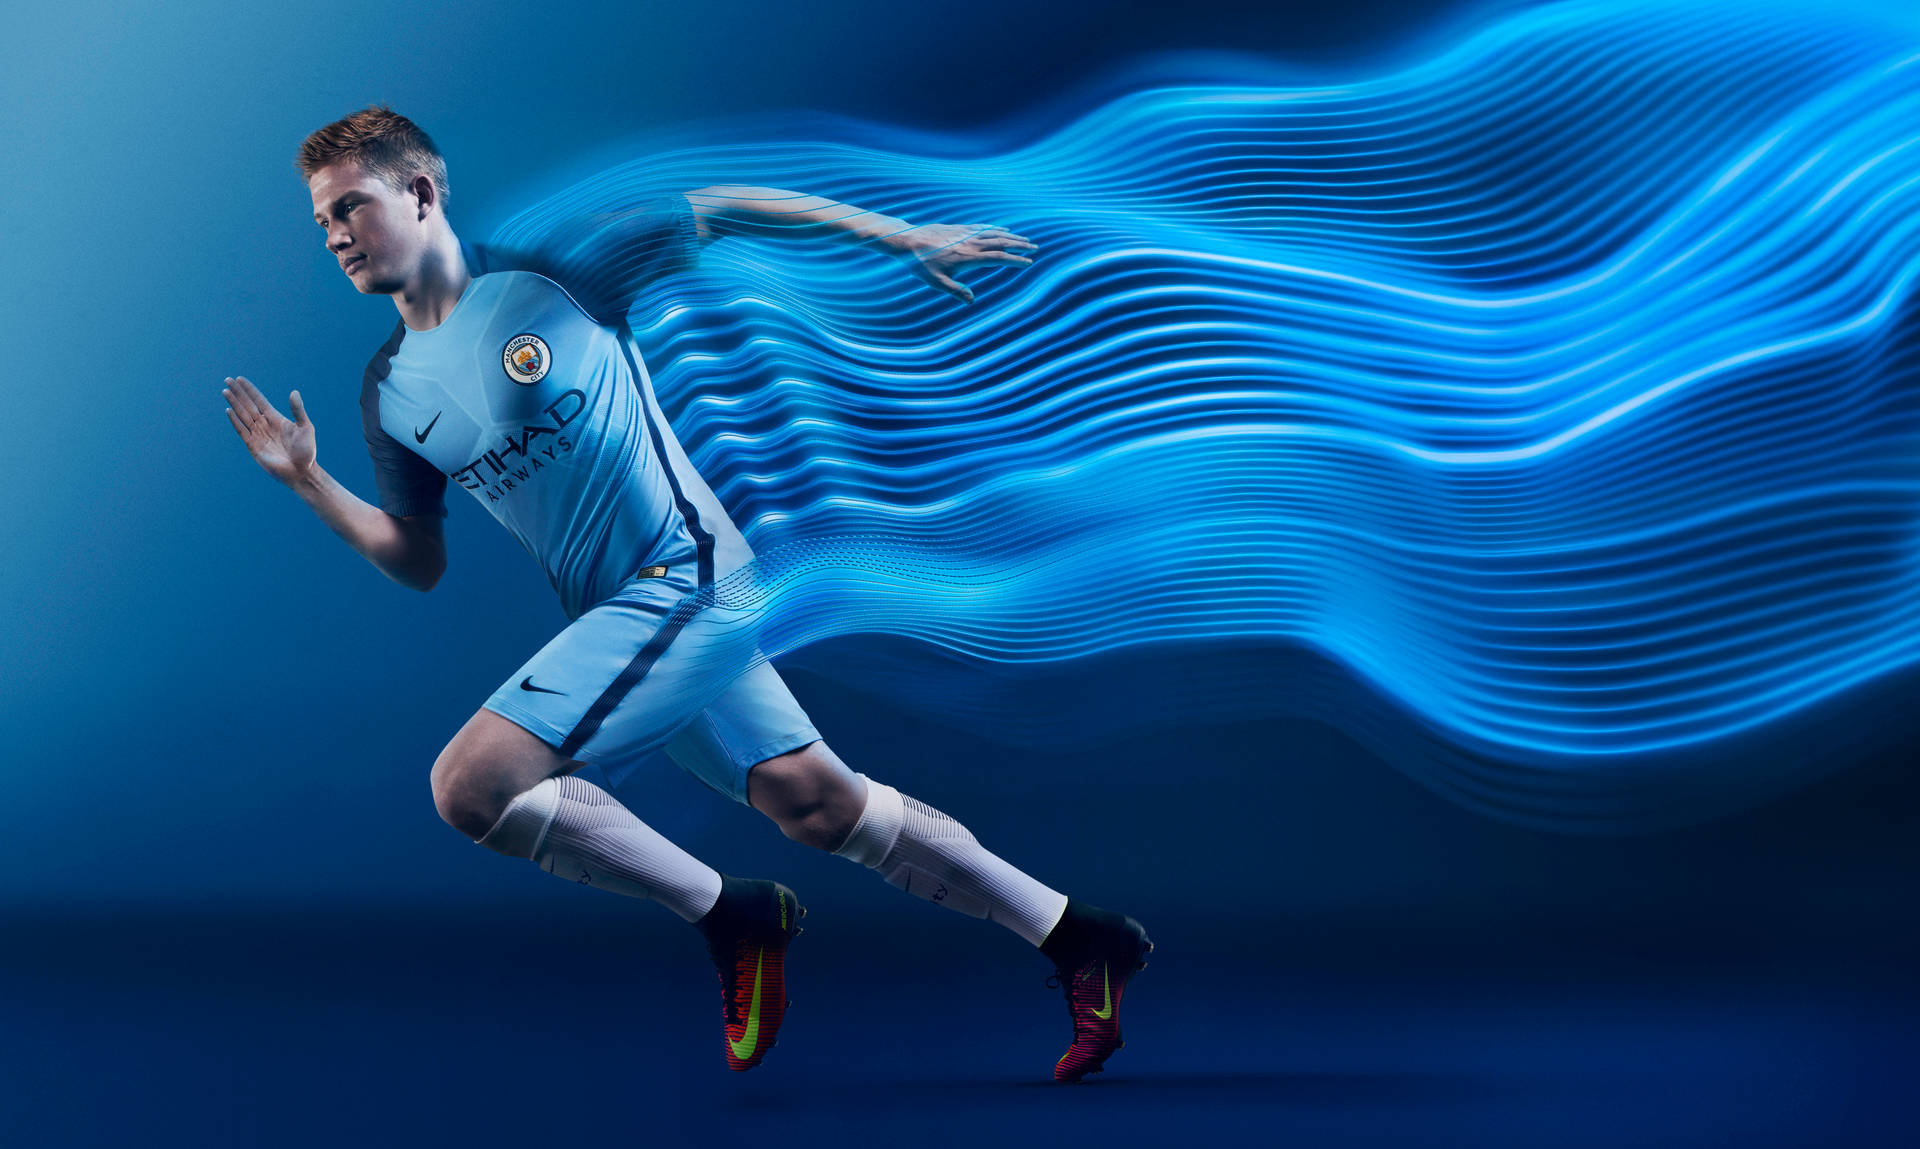 Manchester City 4k Løbende Fodboldspiller Wallpaper